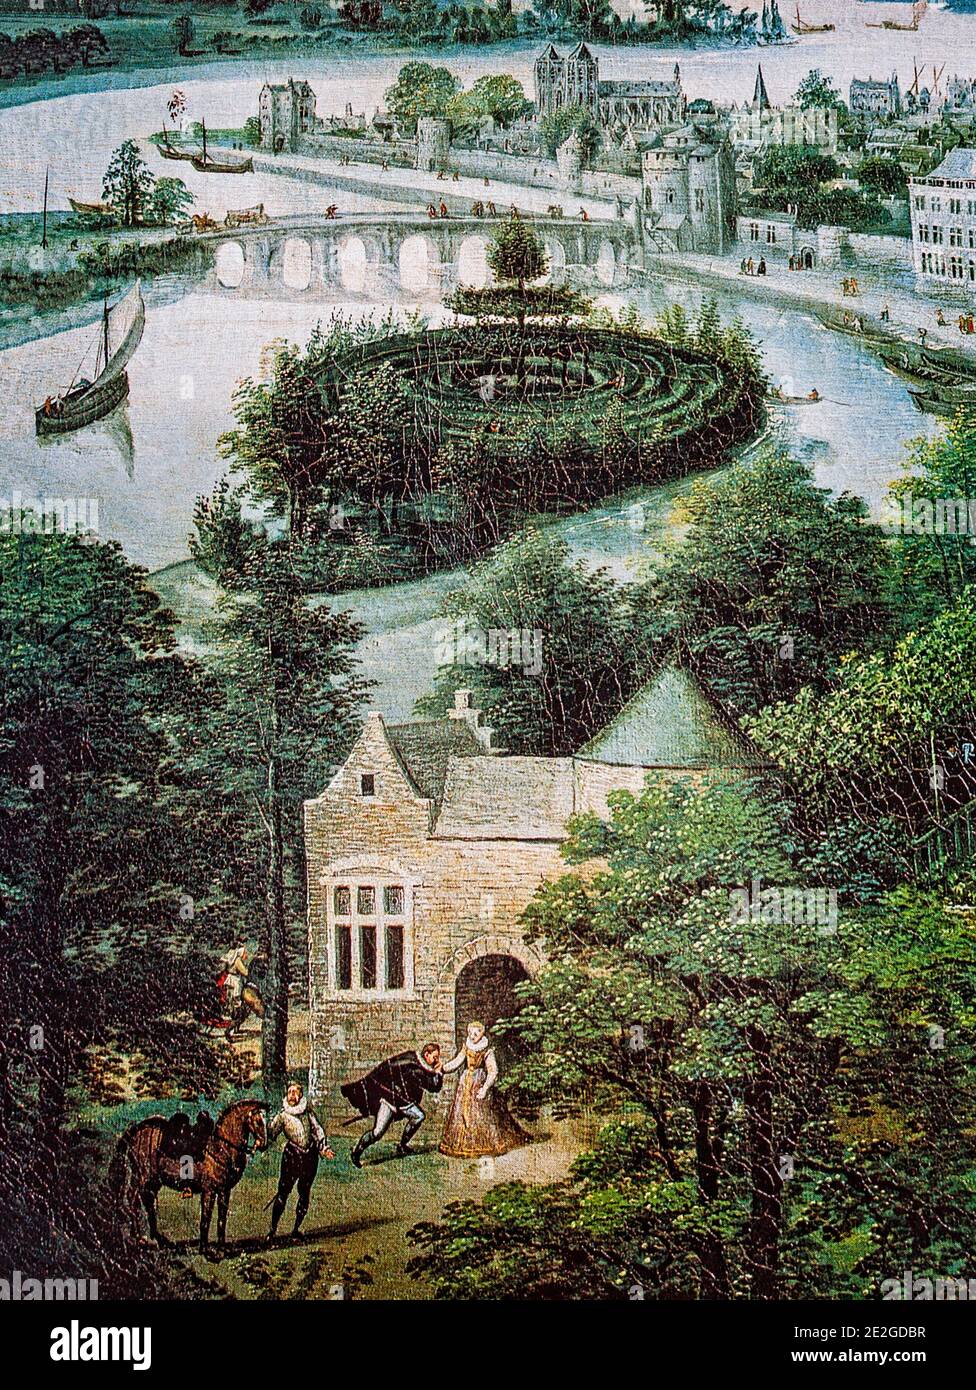 Détail d'un labyrinthe insulaire, du 'Landscape in Spring - May' peint par Valckenborch ou Lucas van Valckenborch l'ancien (1535–1597), un peintre flamand, principalement connu pour ses paysages. Banque D'Images